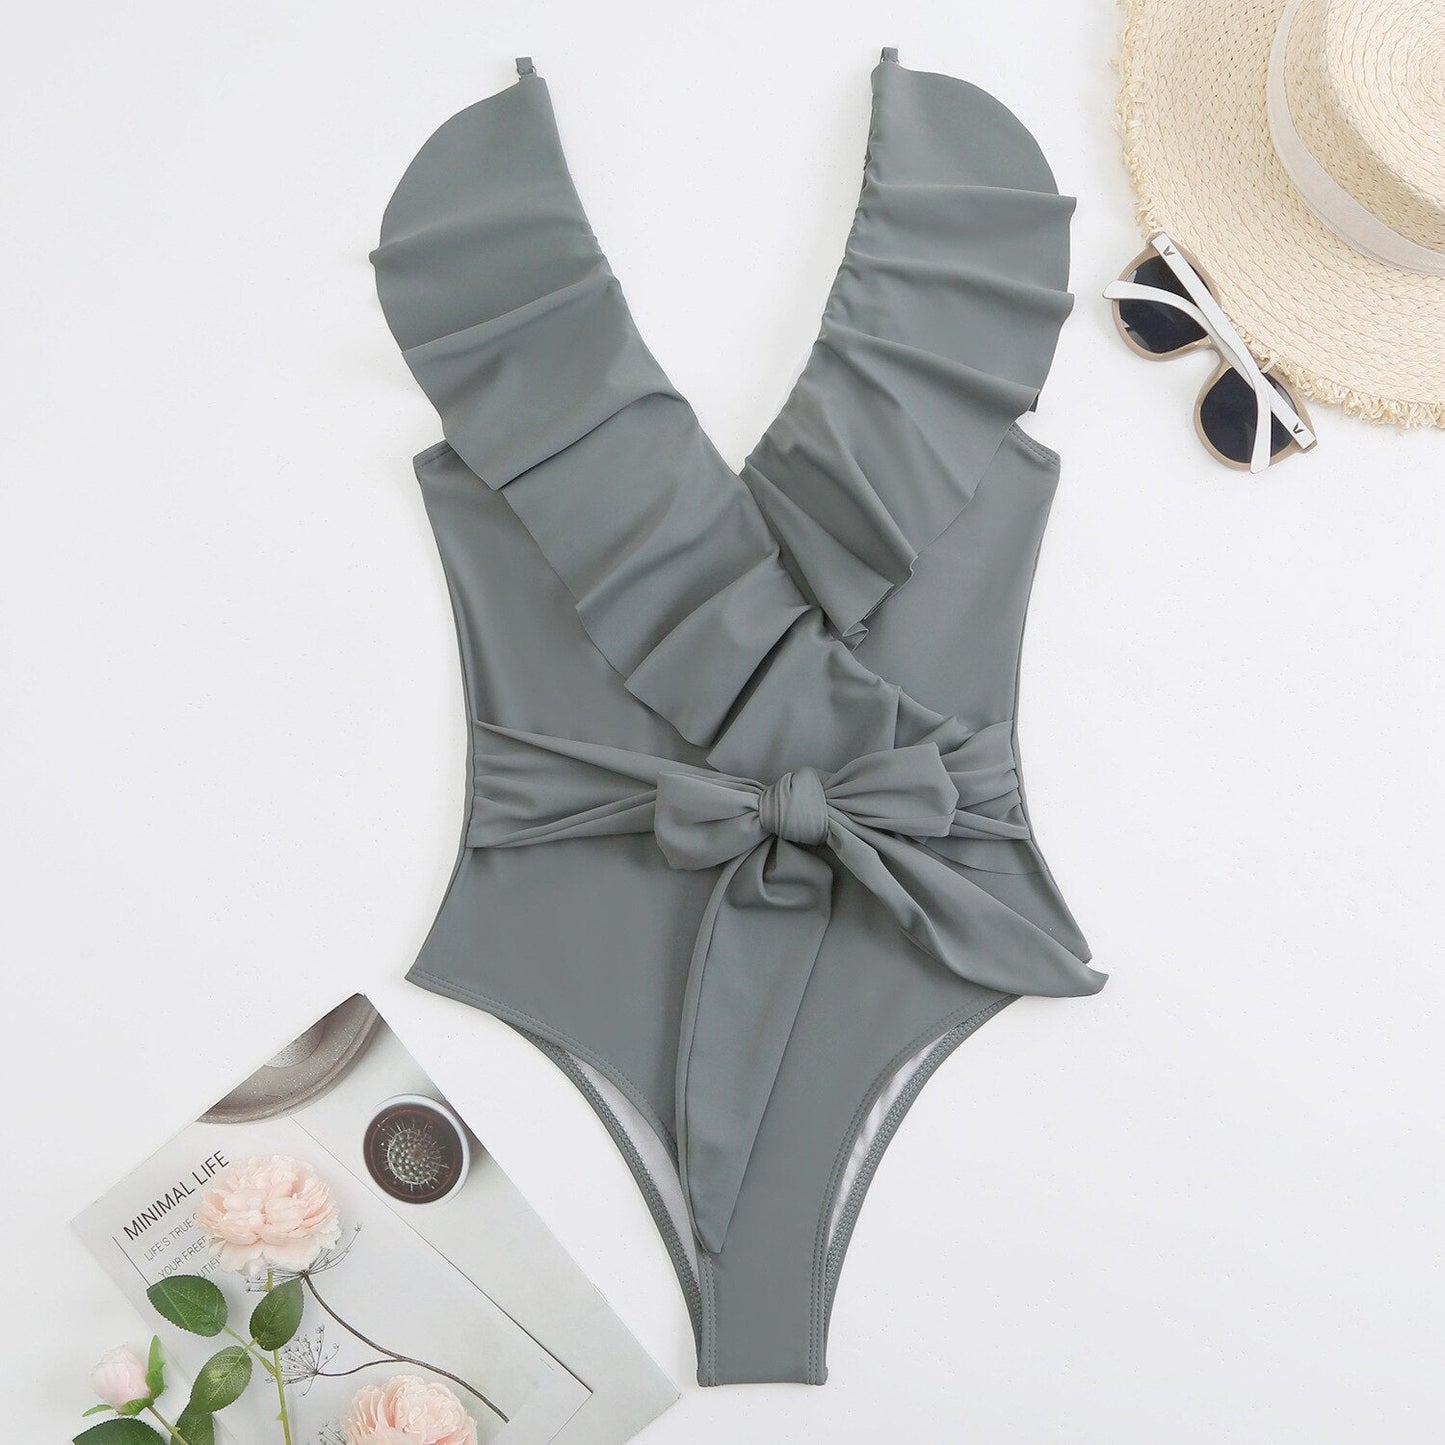 Premium Ruffled Classic Chic One Piece Swimsuit  Sunset and Swim gray S 